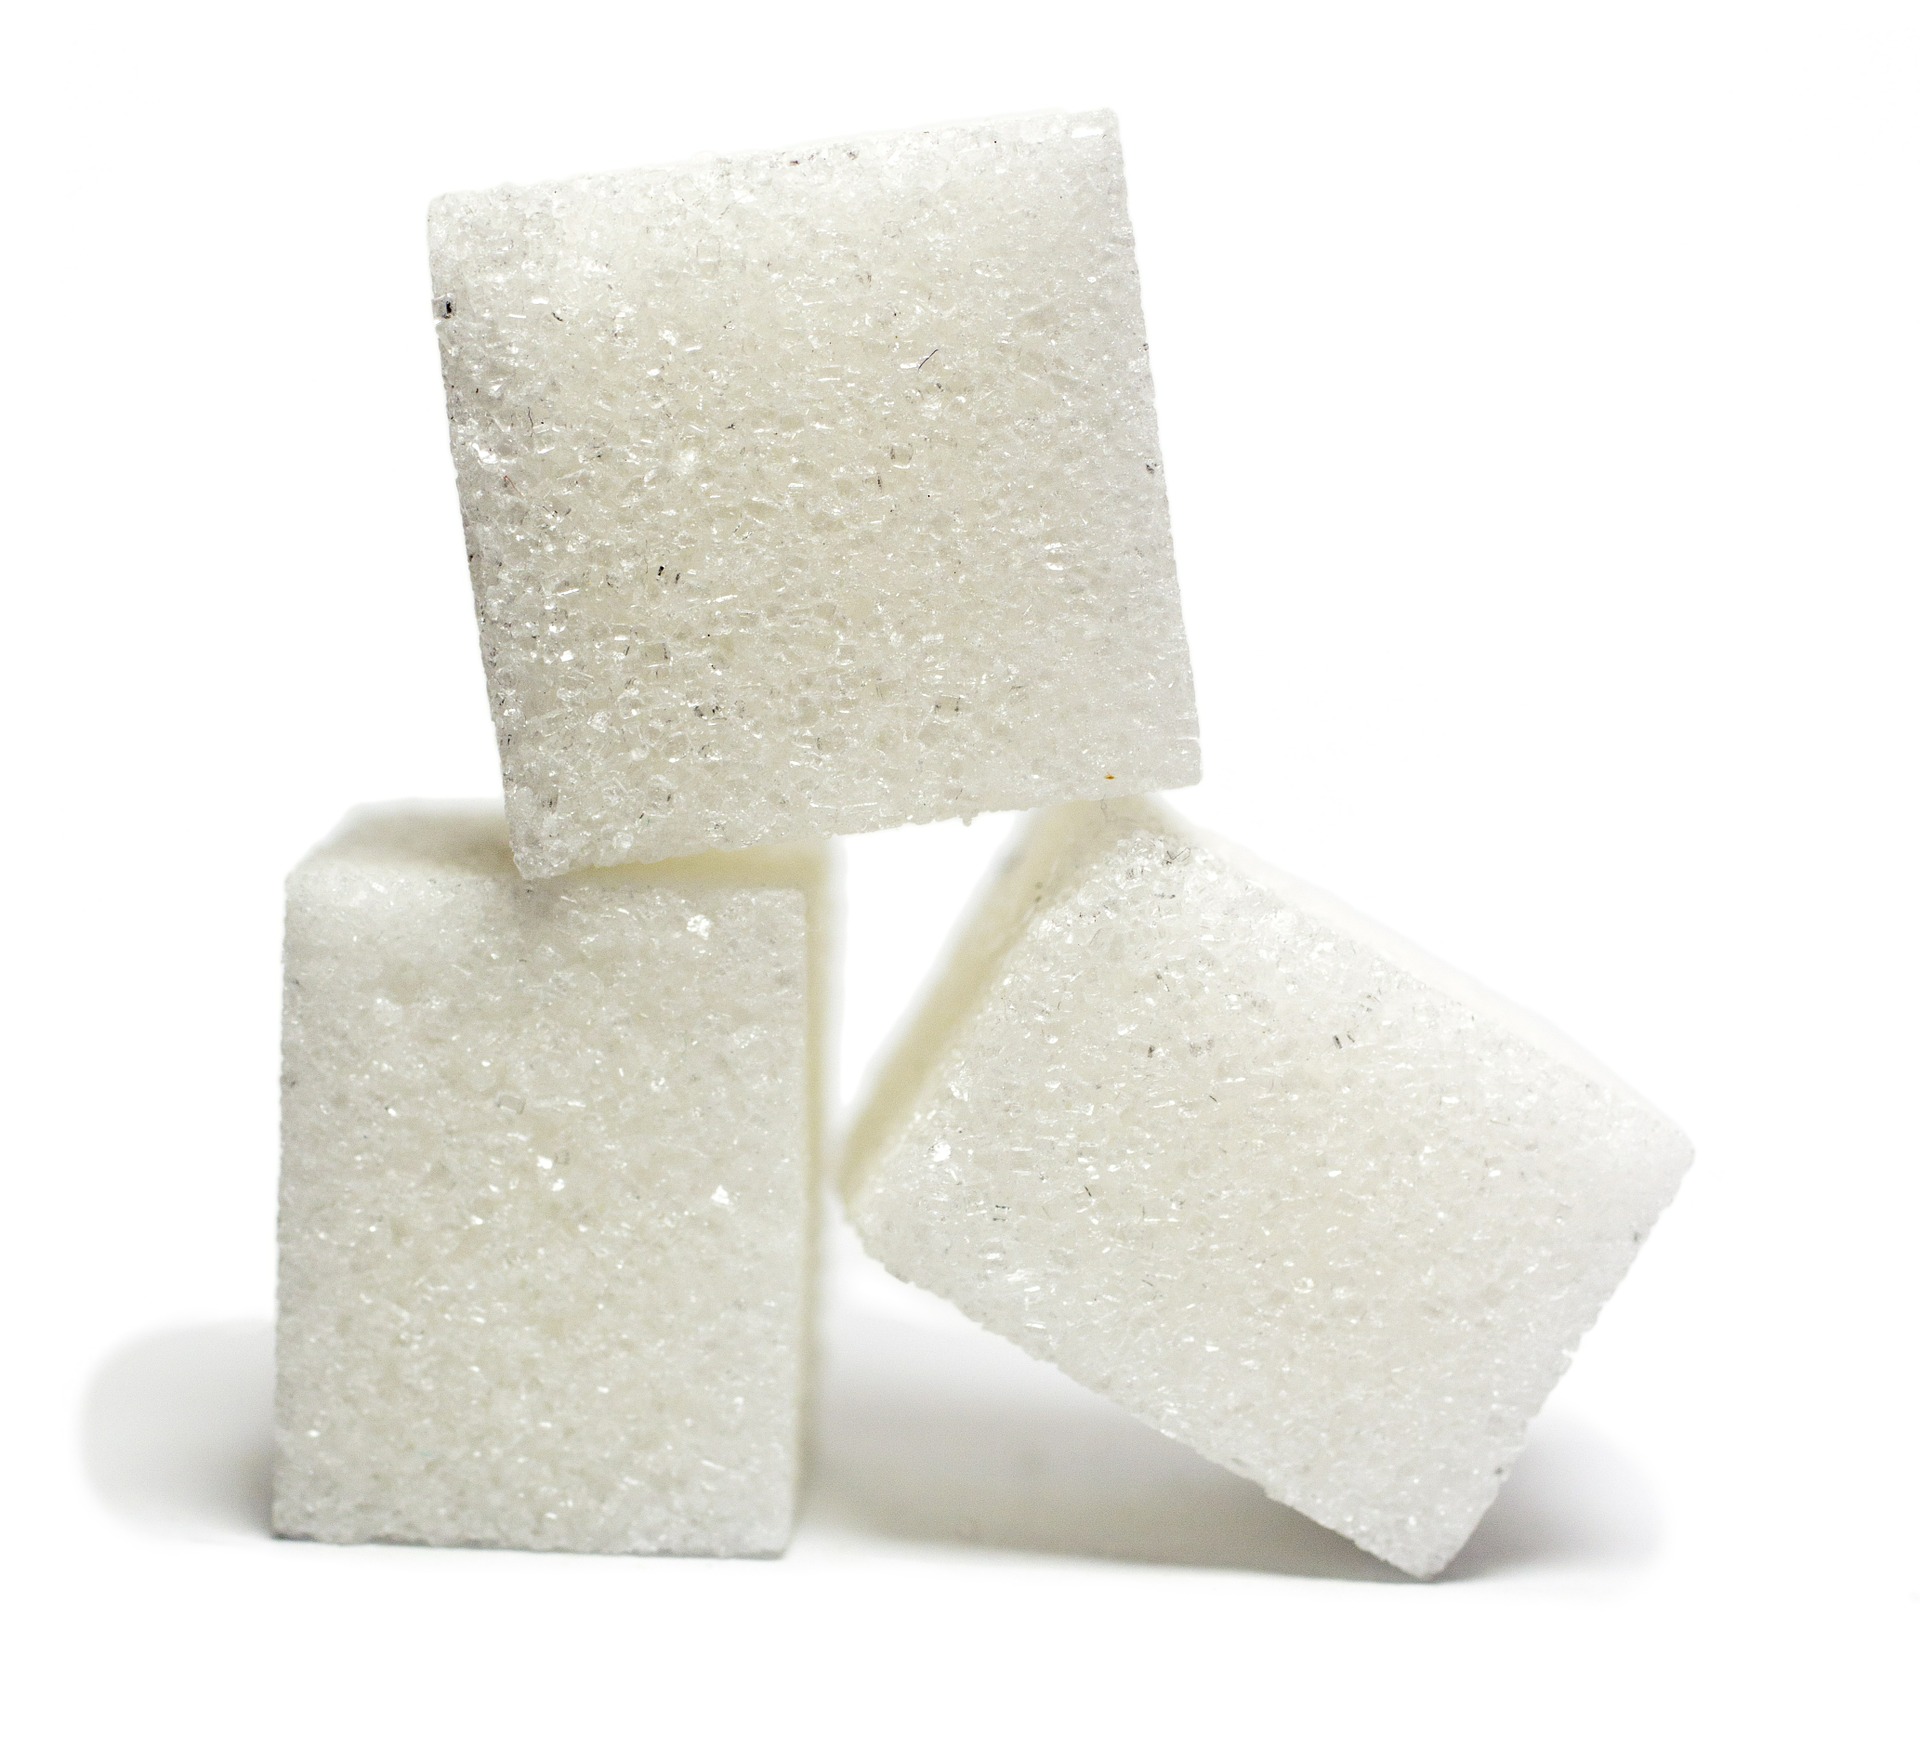 Exportação de açúcar do Brasil para China deve voltar a crescer